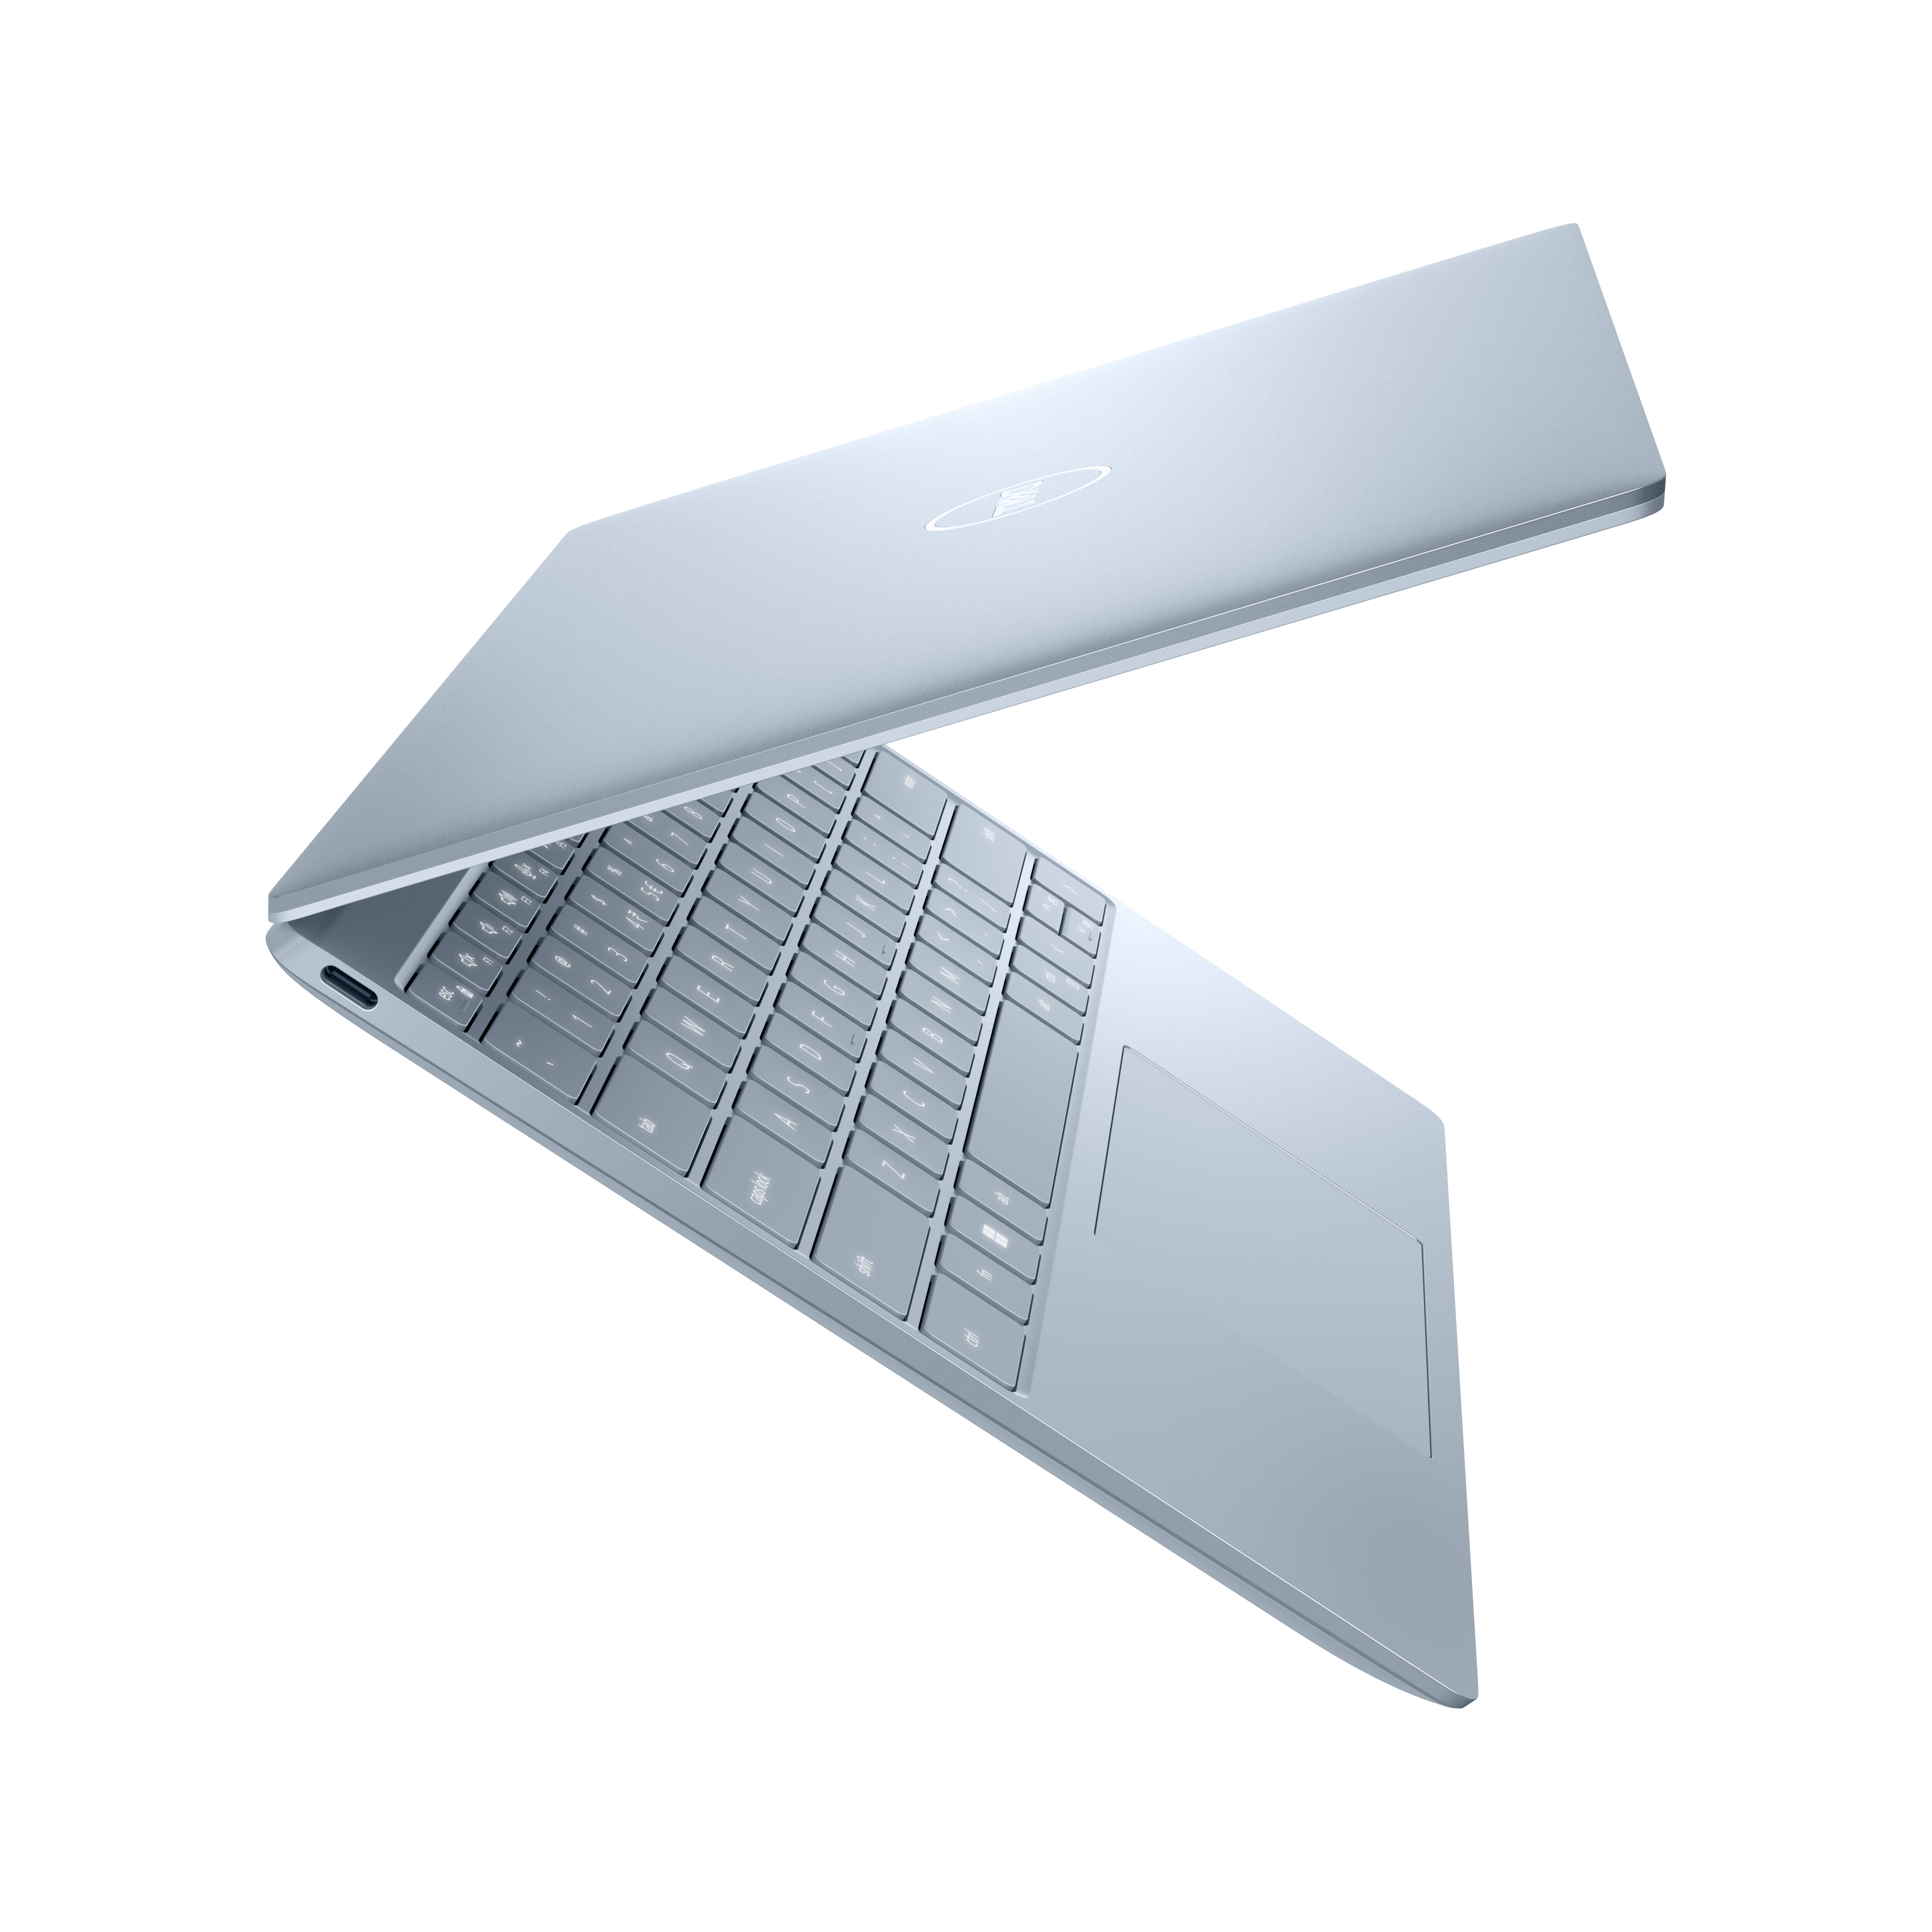 XPS 13 Laptop